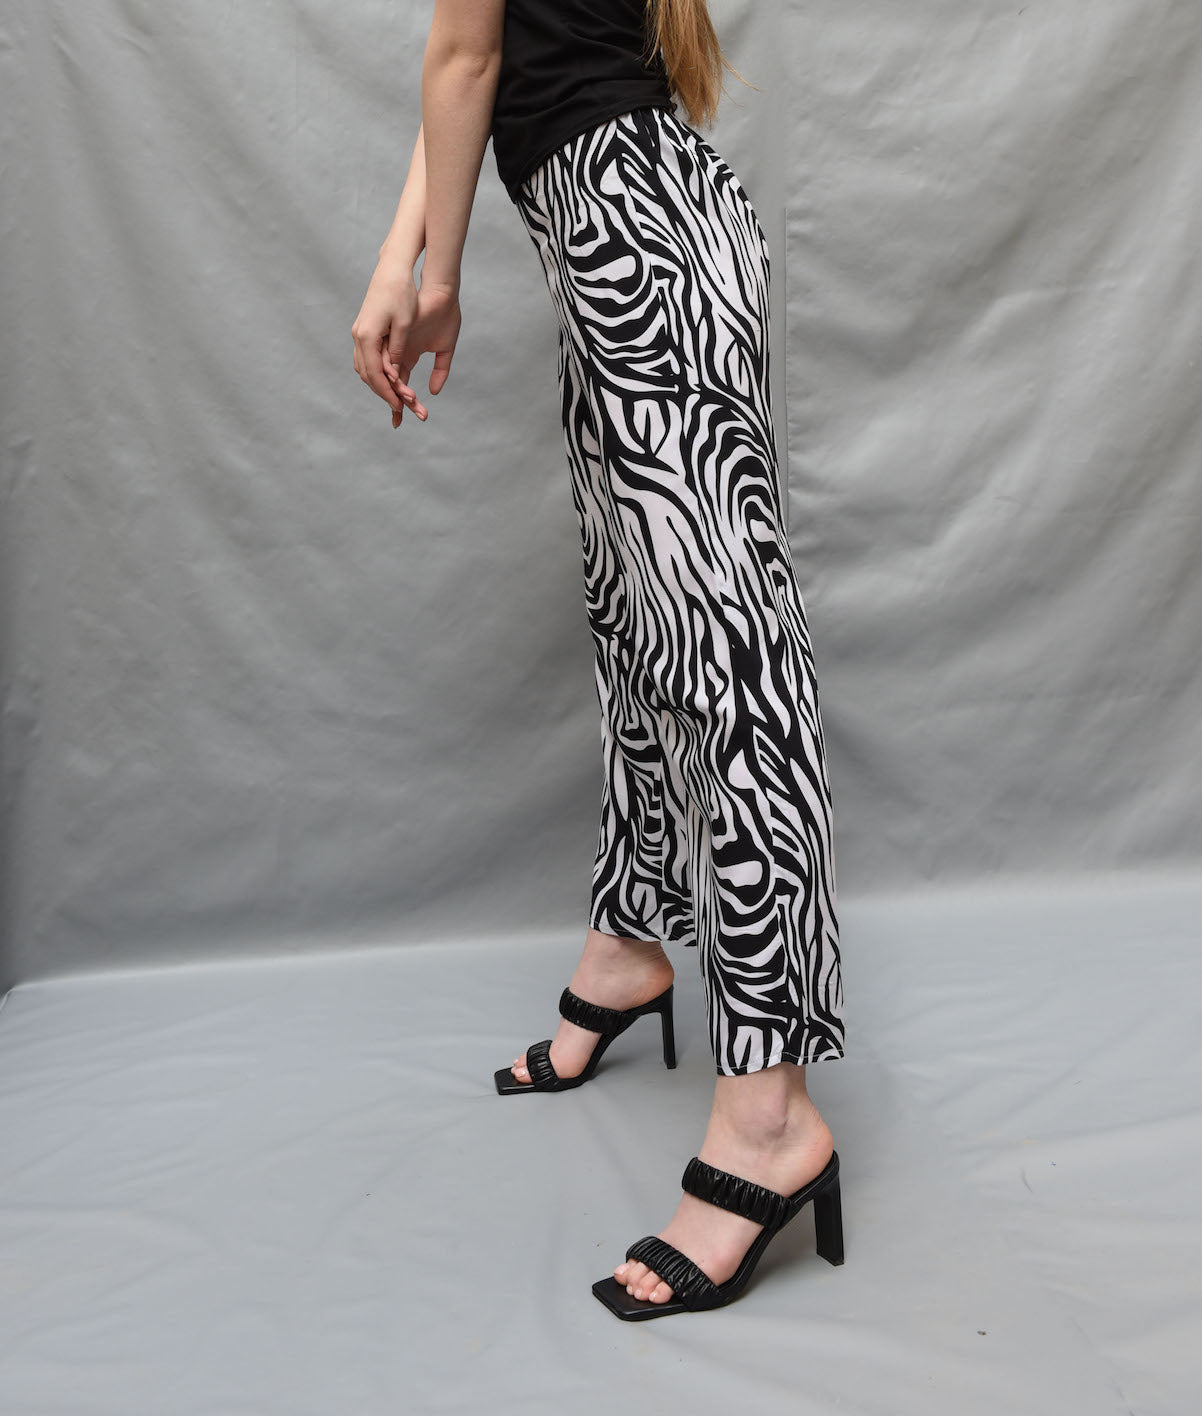 Zebra print pants in white